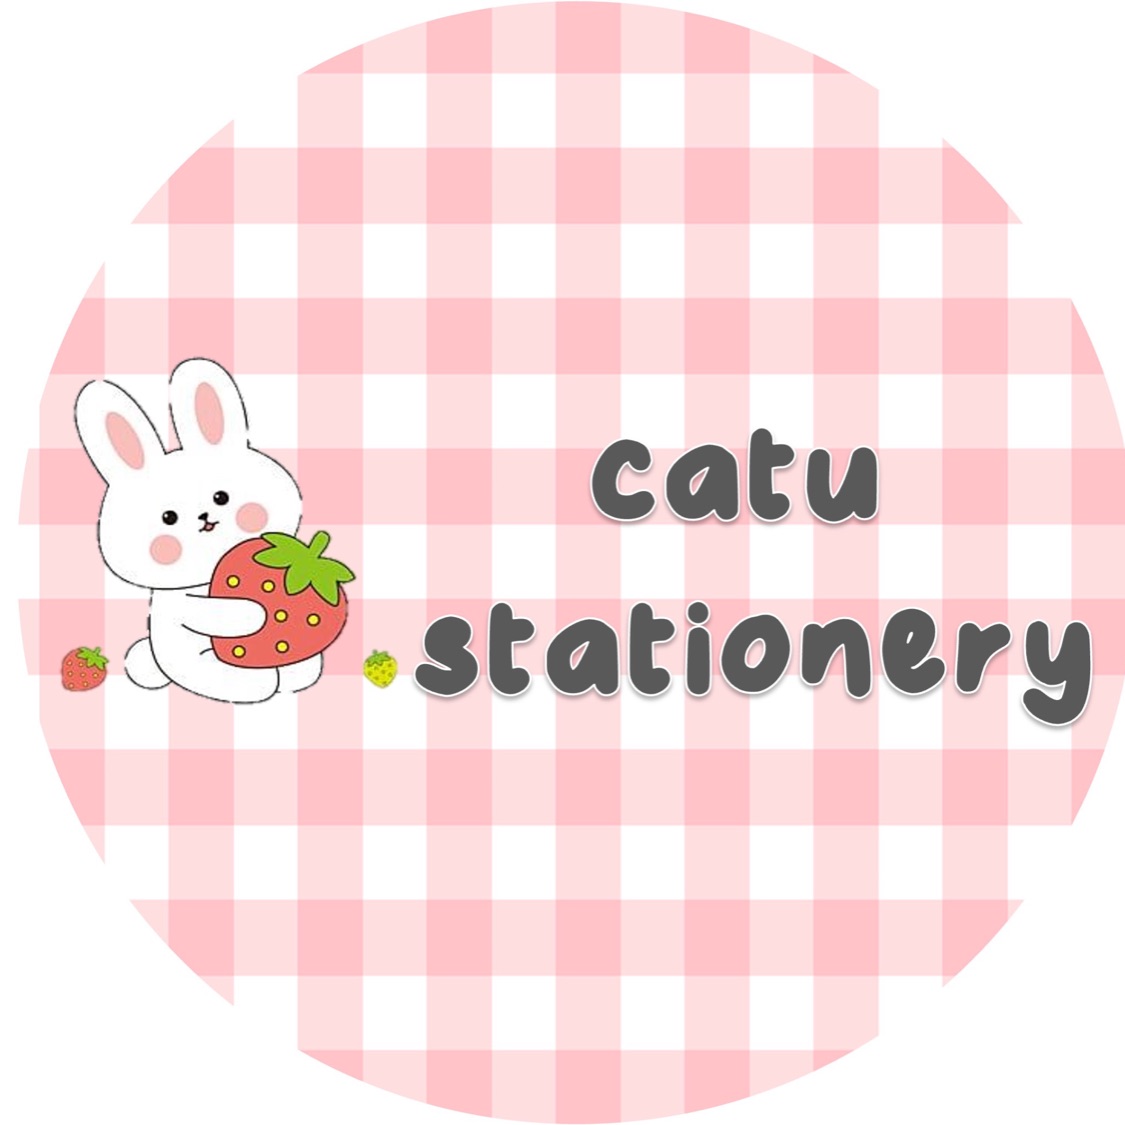 Catu Stationery